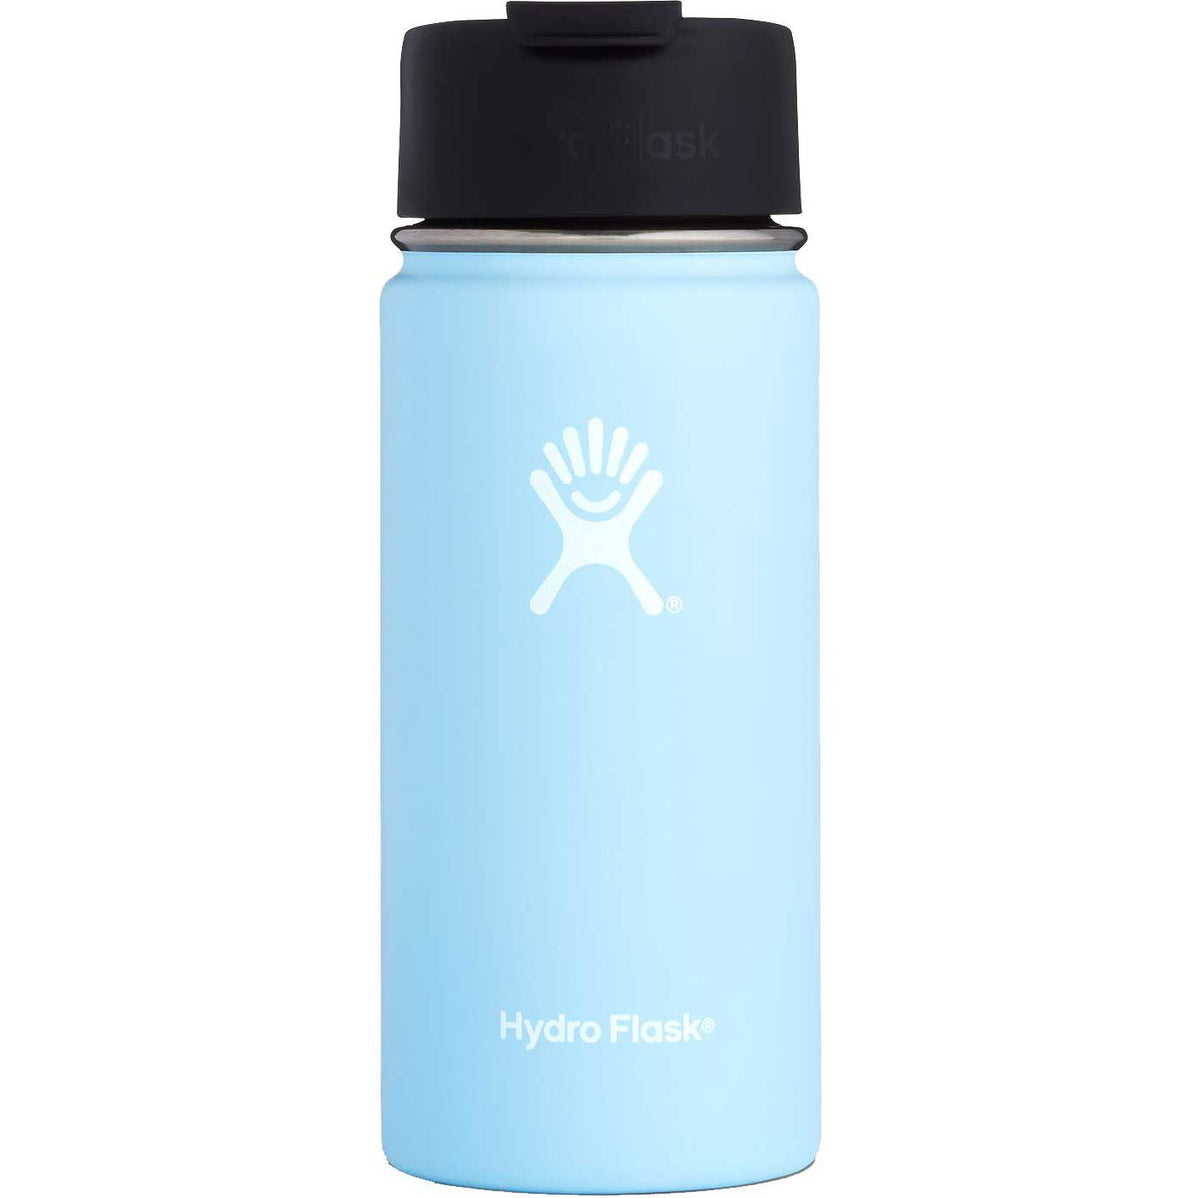 hydro flask 16 oz water bottle